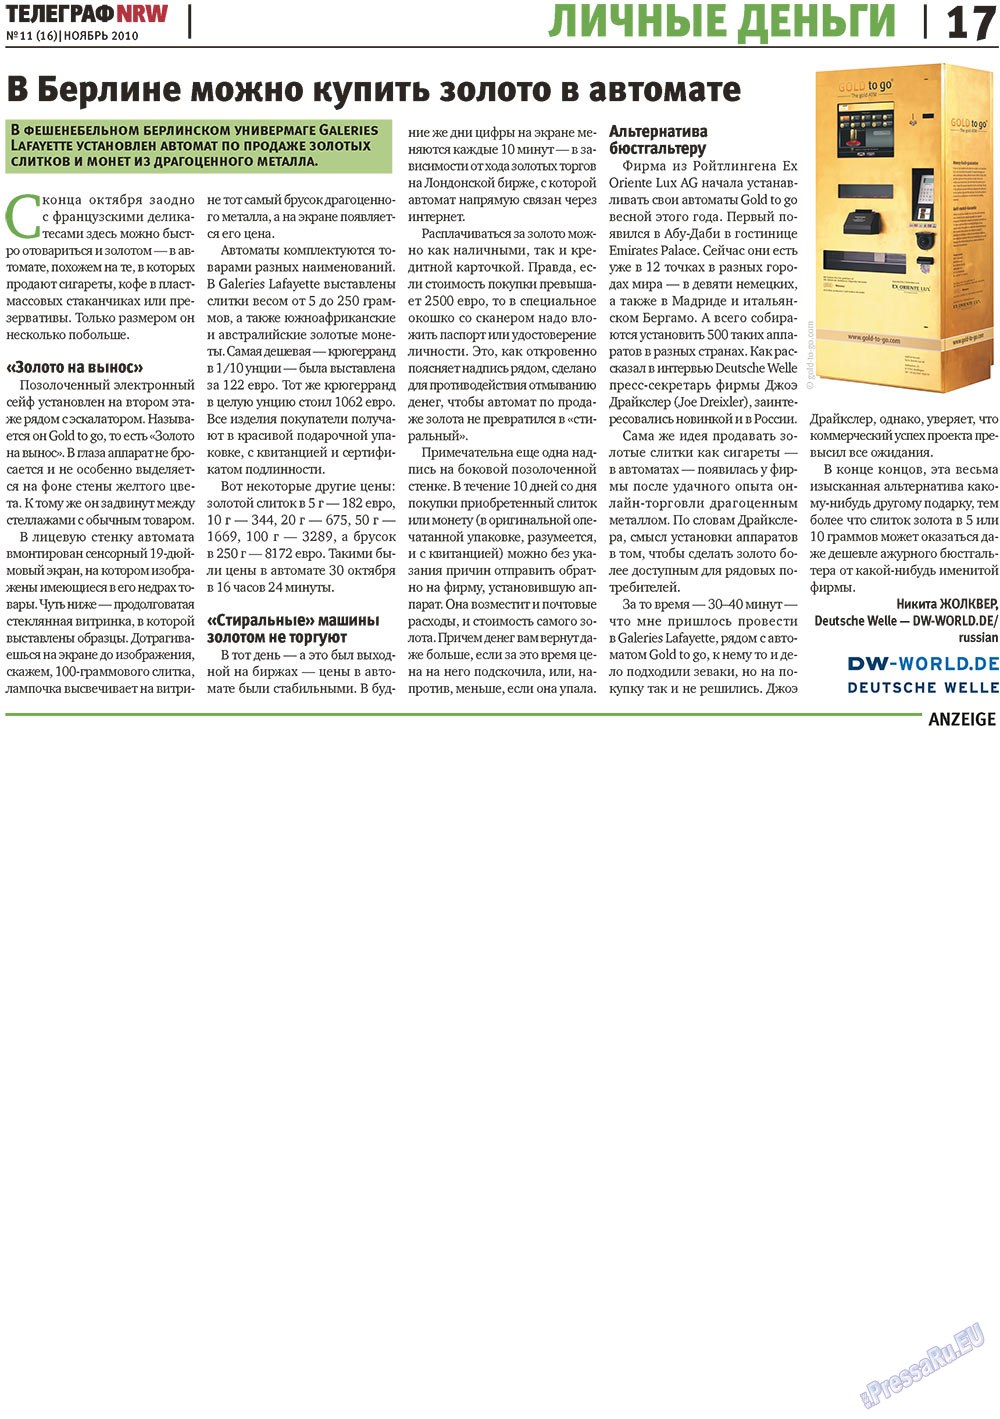 Телеграф NRW (газета). 2010 год, номер 11, стр. 17